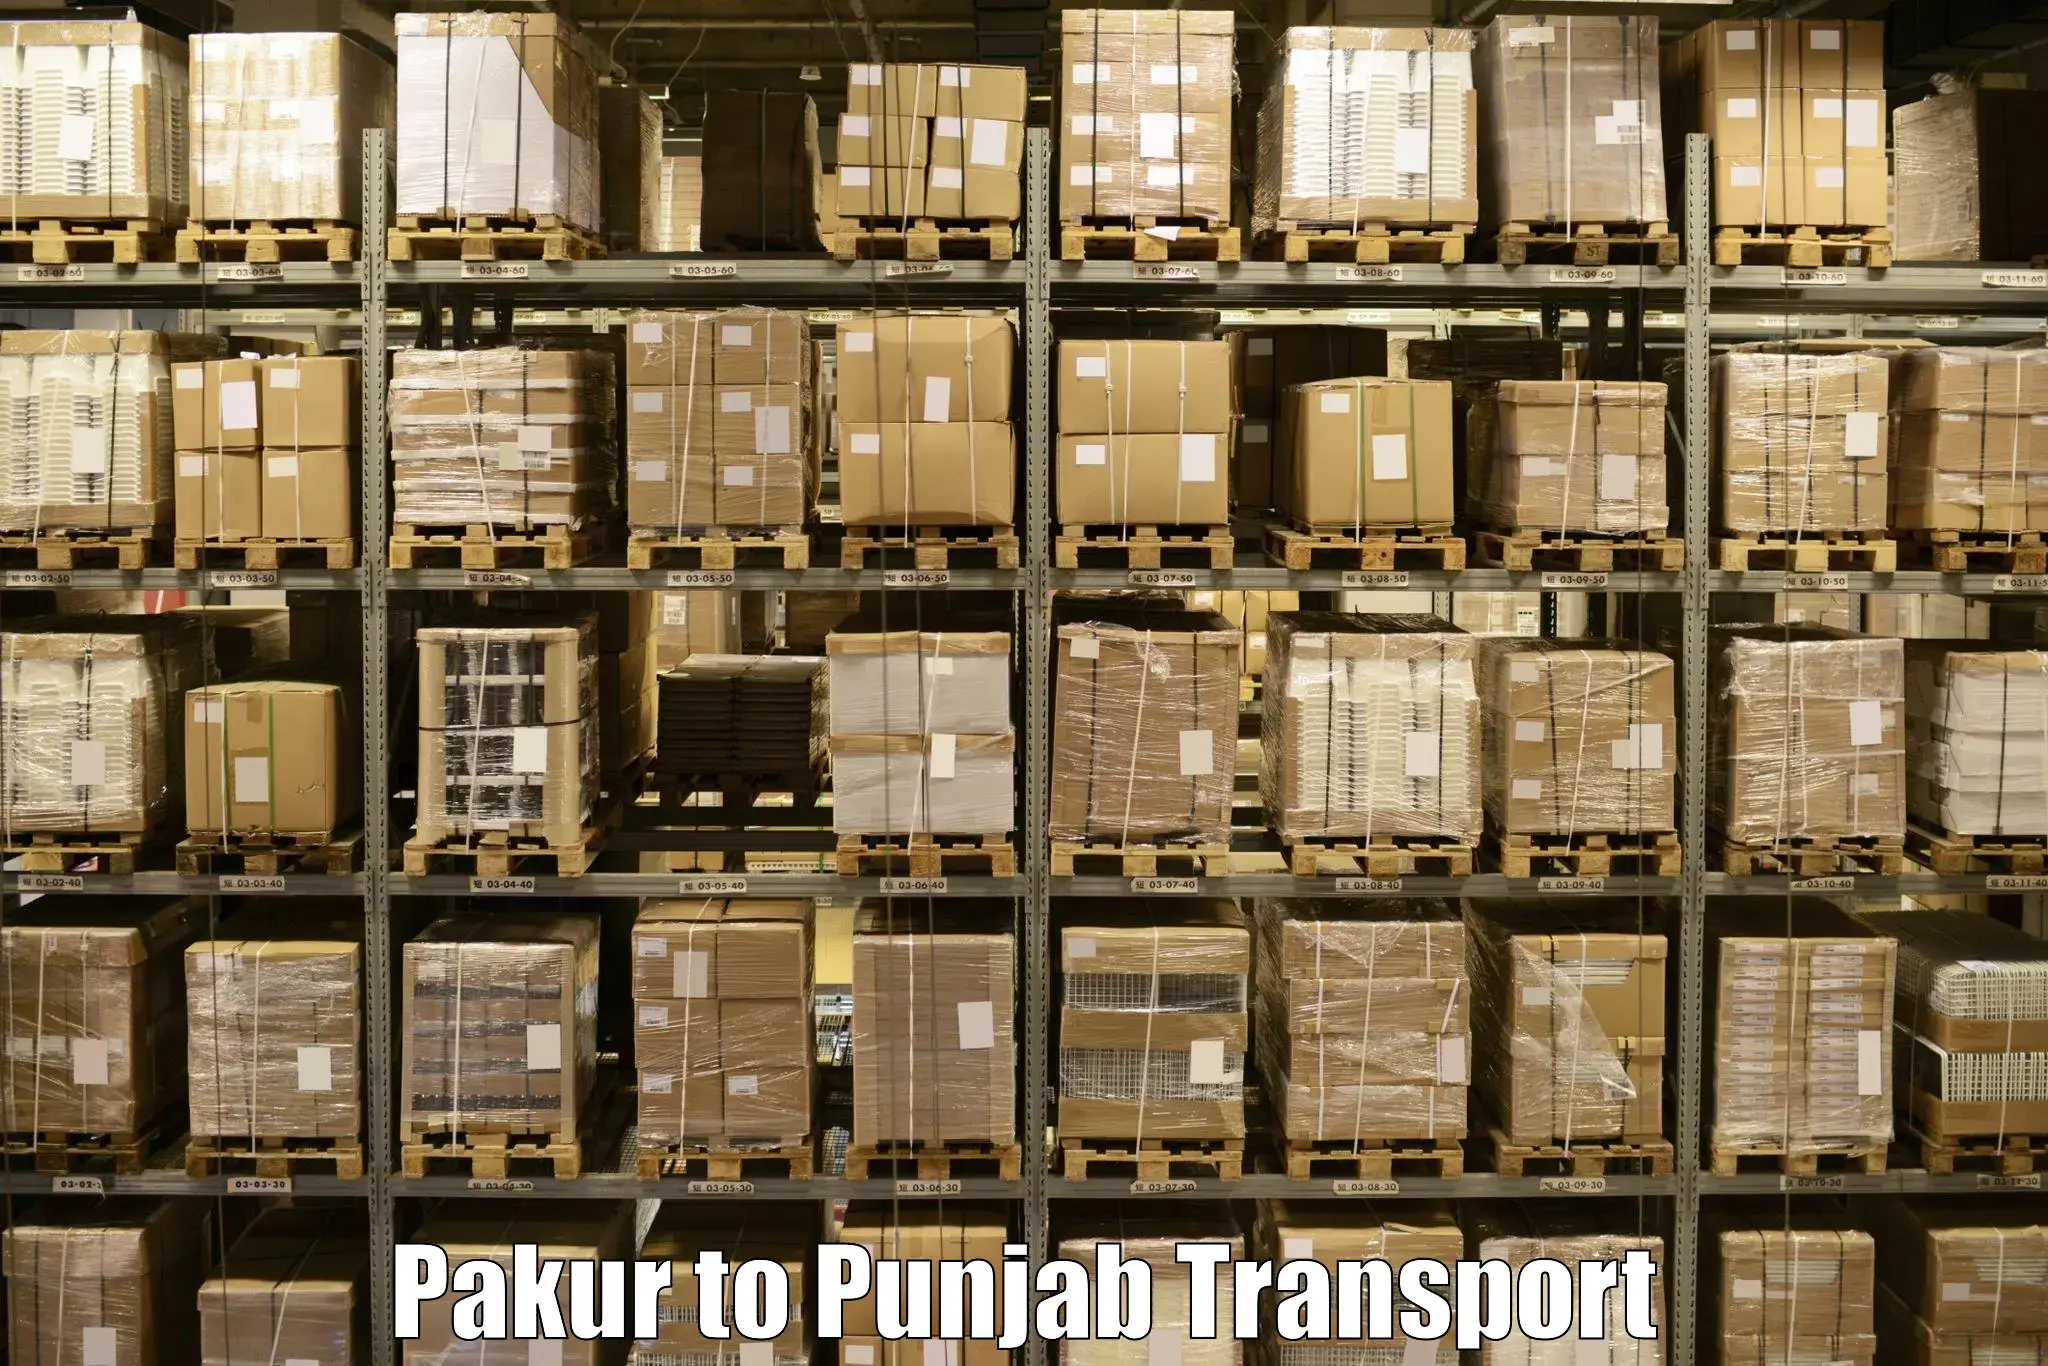 Cycle transportation service Pakur to Punjab